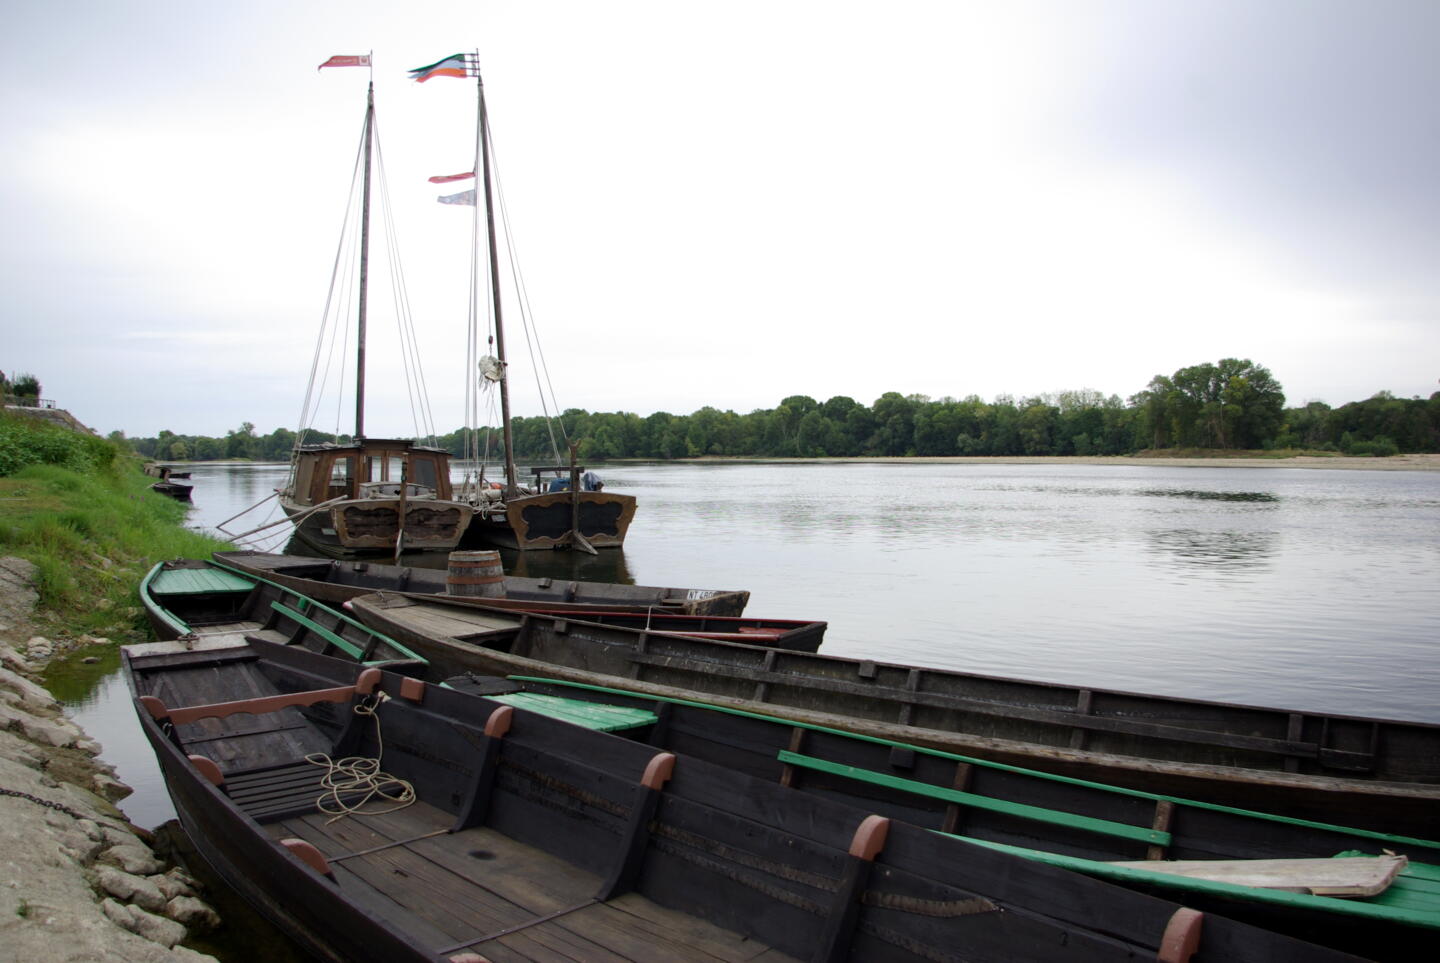 Bateaux traditionnels amarrés sur la Loire, prêts pour le Festival de la Loire, célébrant le patrimoine fluvial.